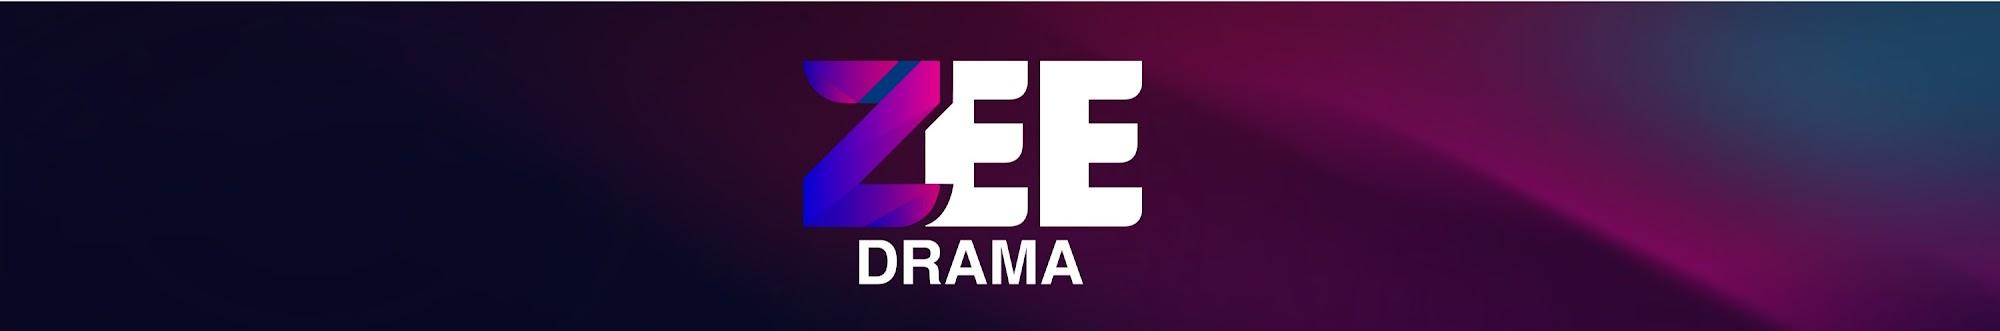 Zee Drama